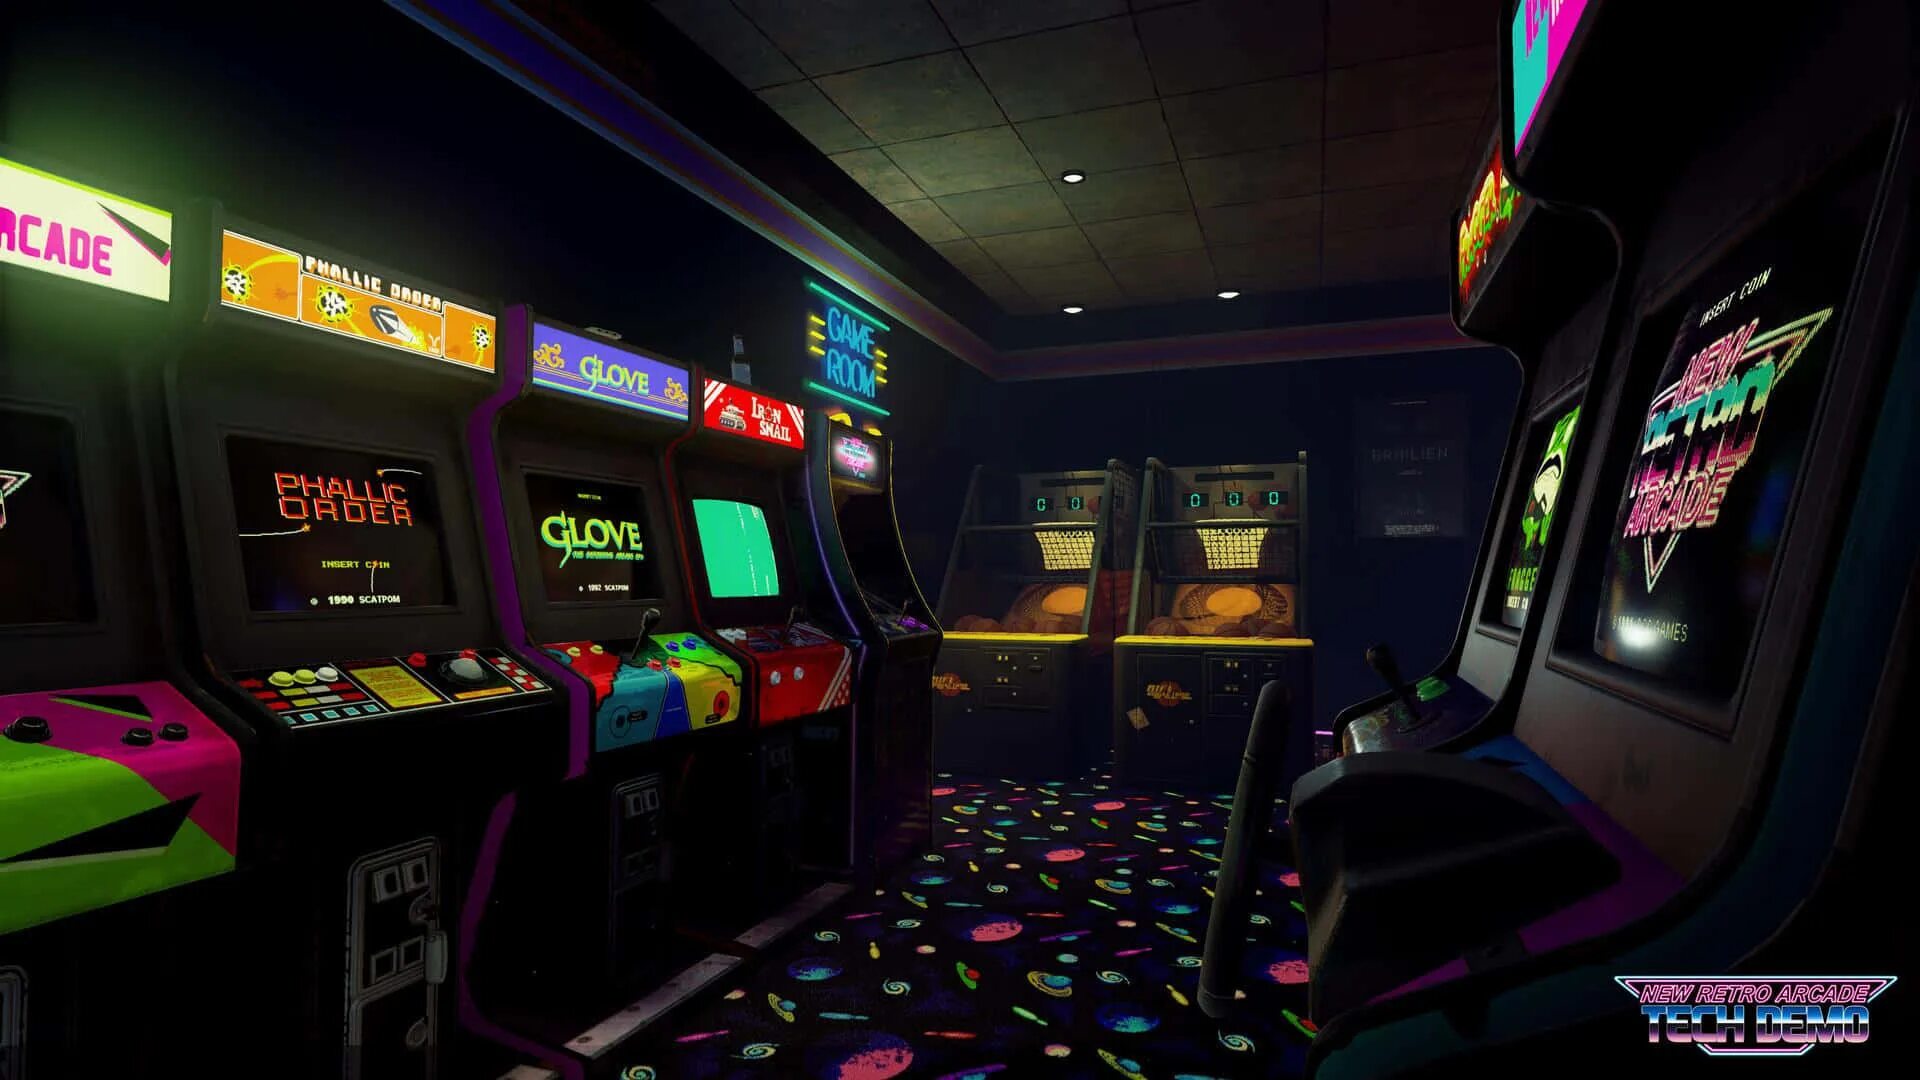 My games игровой. Игровой автомат Retro Arcade. Аркадные автоматы 80-х. Зал игровых автоматов. Игровой автомат неон.